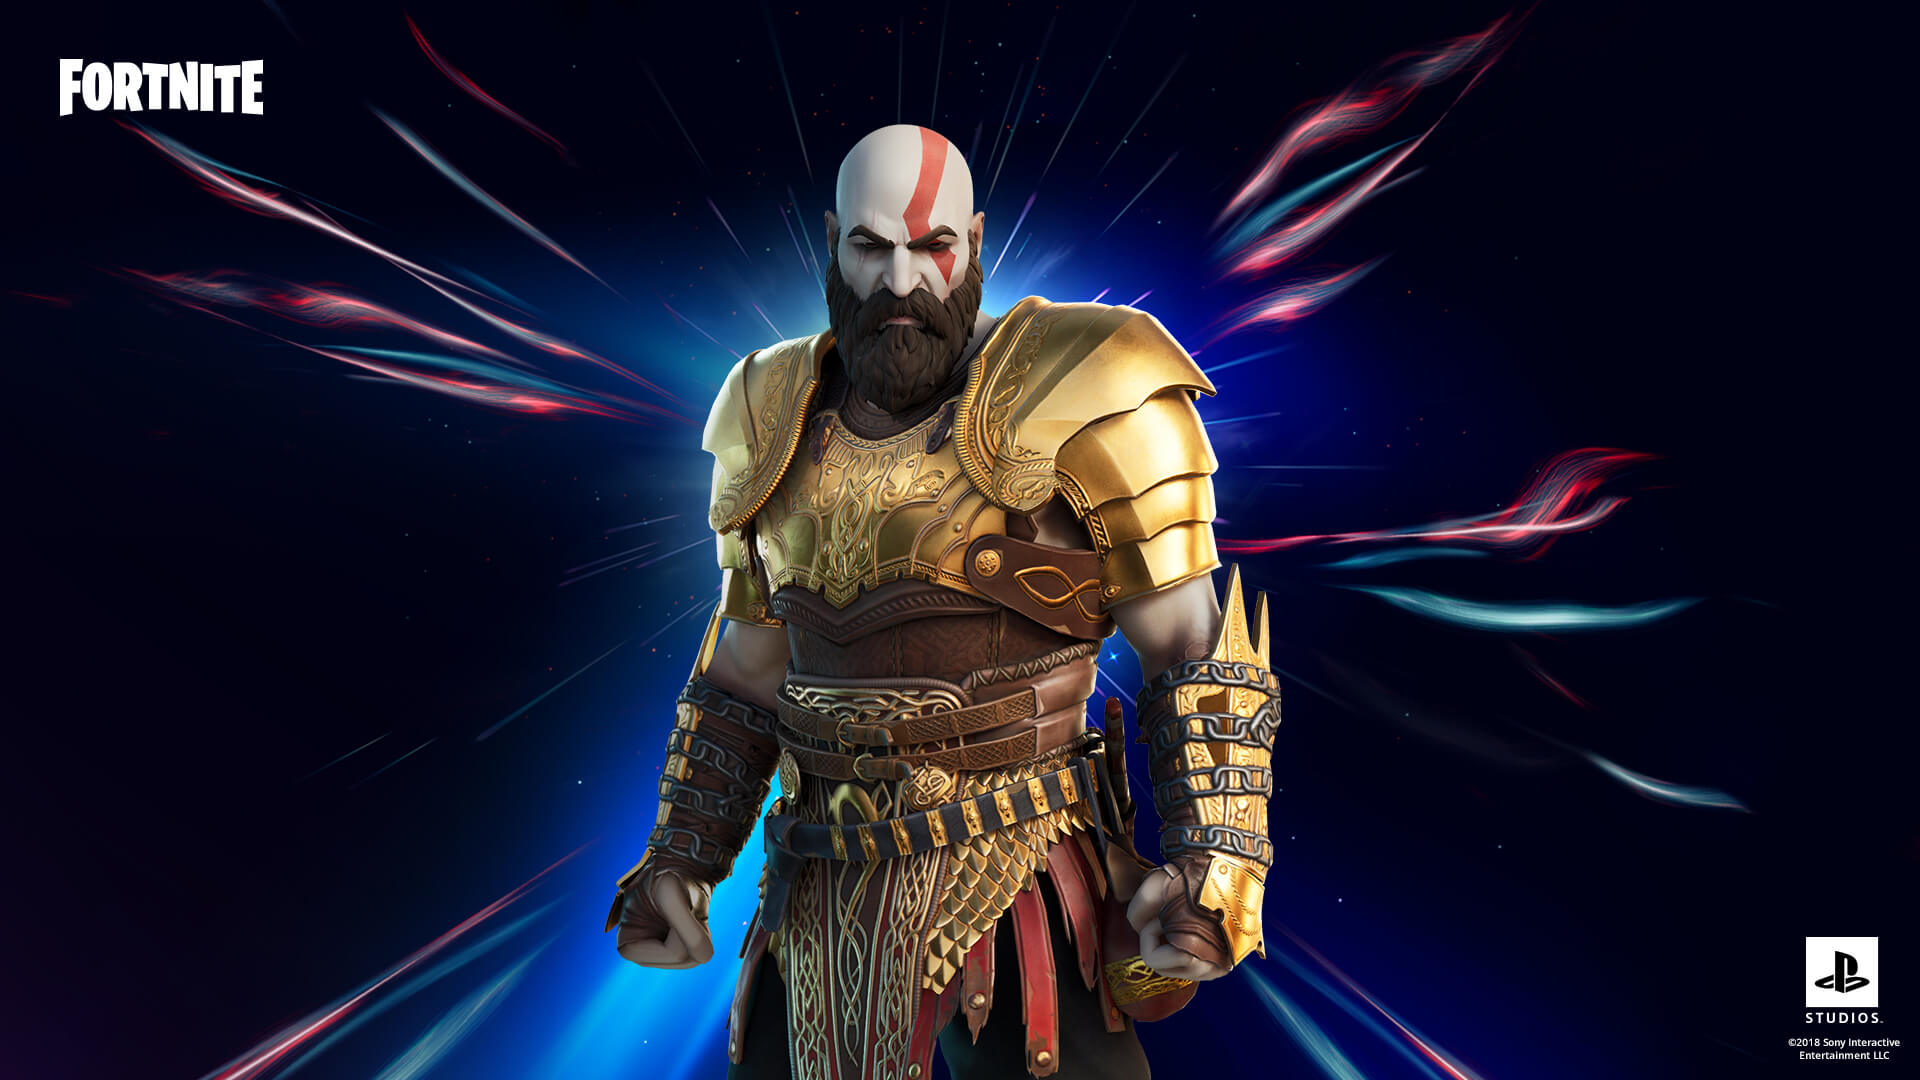 Fortnite - Como conseguir a skin do Kratos